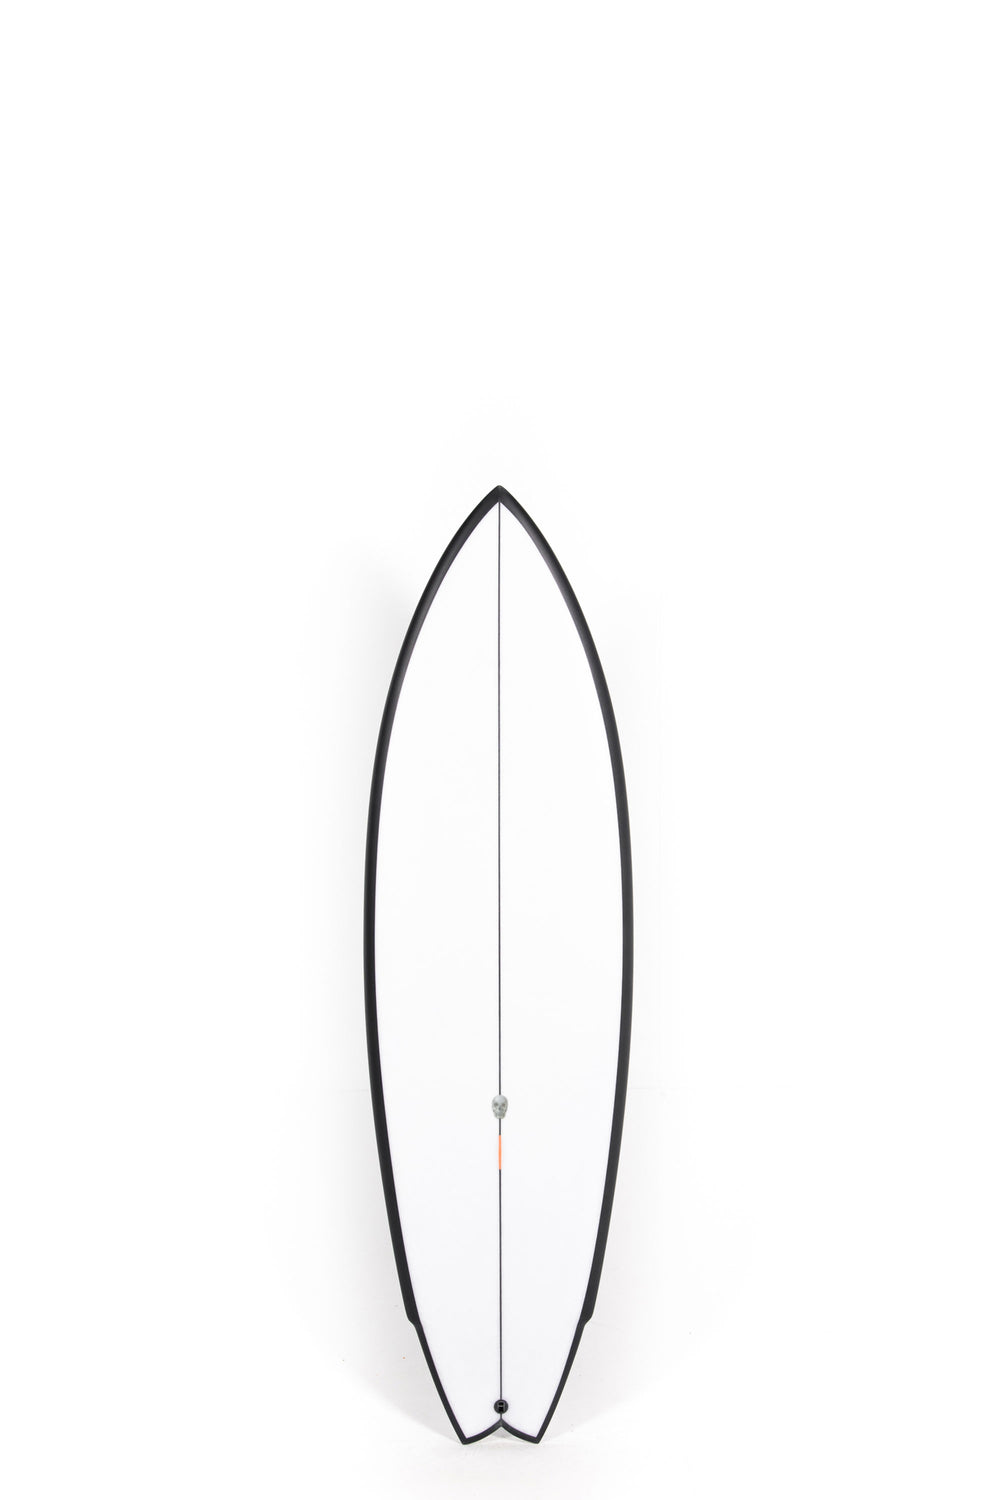 Christenson Surfboards - LANE SPLITTER SWALLOW - 5'10